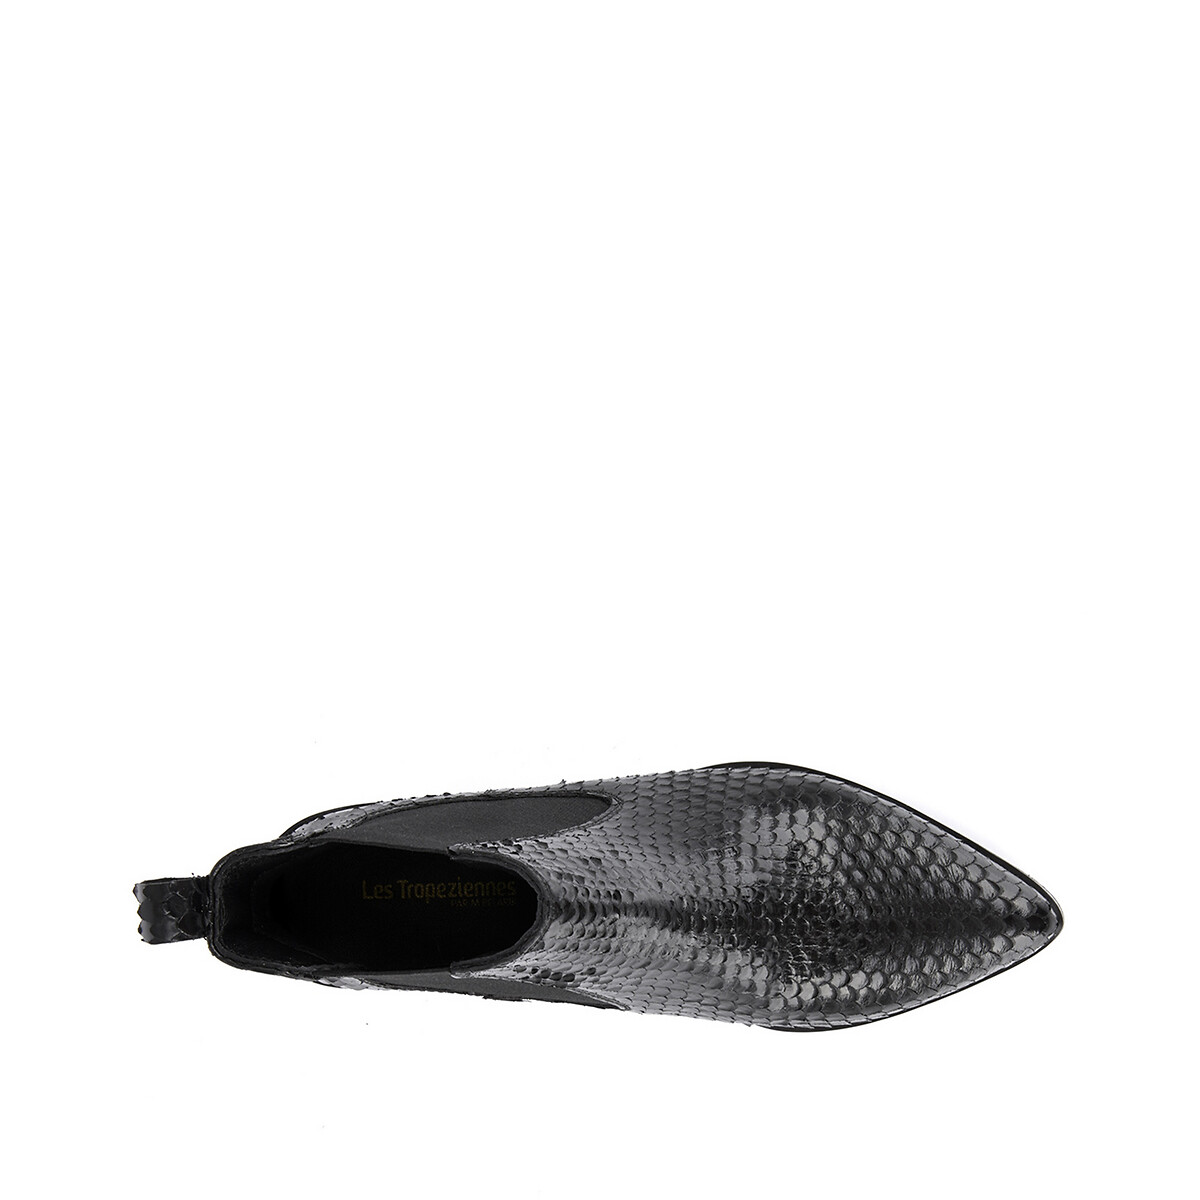 Ботинки La Redoute Под кожу питона Kiwi 41 черный, размер 41 - фото 3